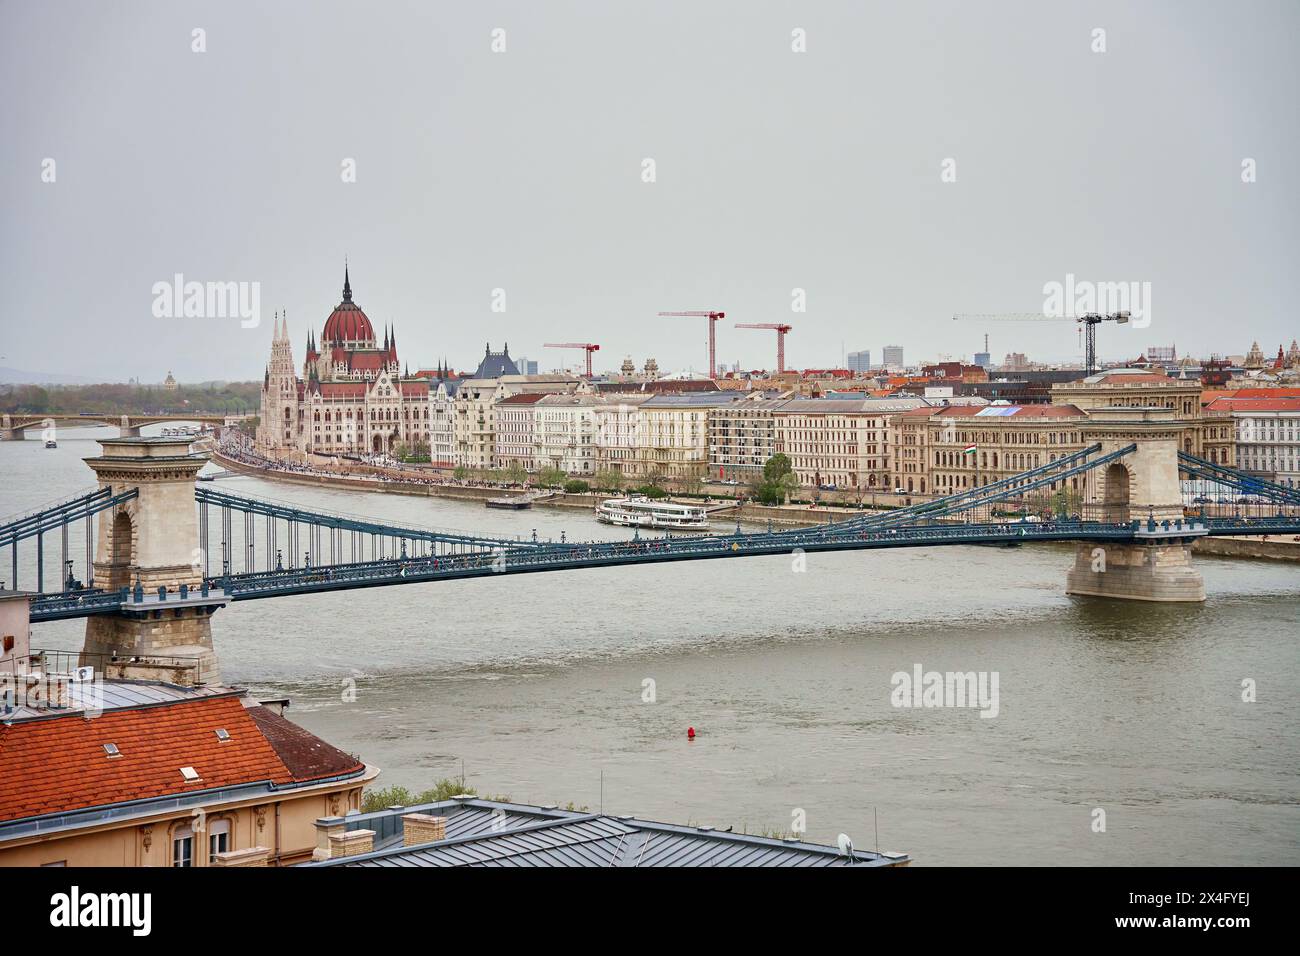 Panoramablick auf die Skyline von Budapest mit Kettenbrücke entlang der Donau. Architektur der Hauptstadt Ungarns mit historischen Gebäuden und Ruhm Stockfoto